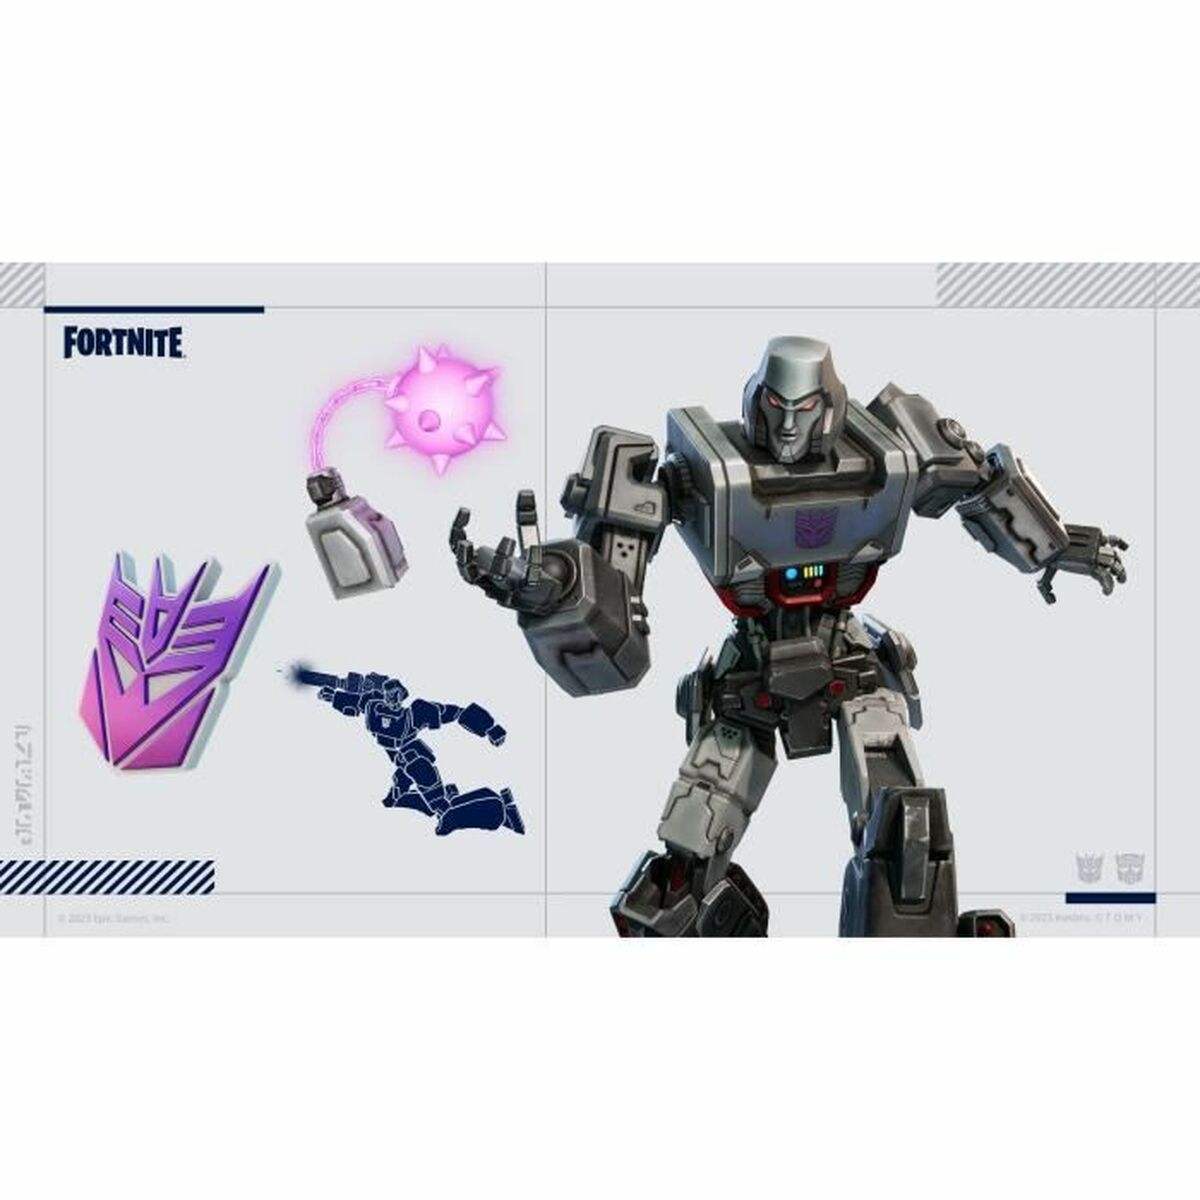 Jeu vidéo PlayStation 4 Fortnite Pack Transformers (FR) Code de téléchargement